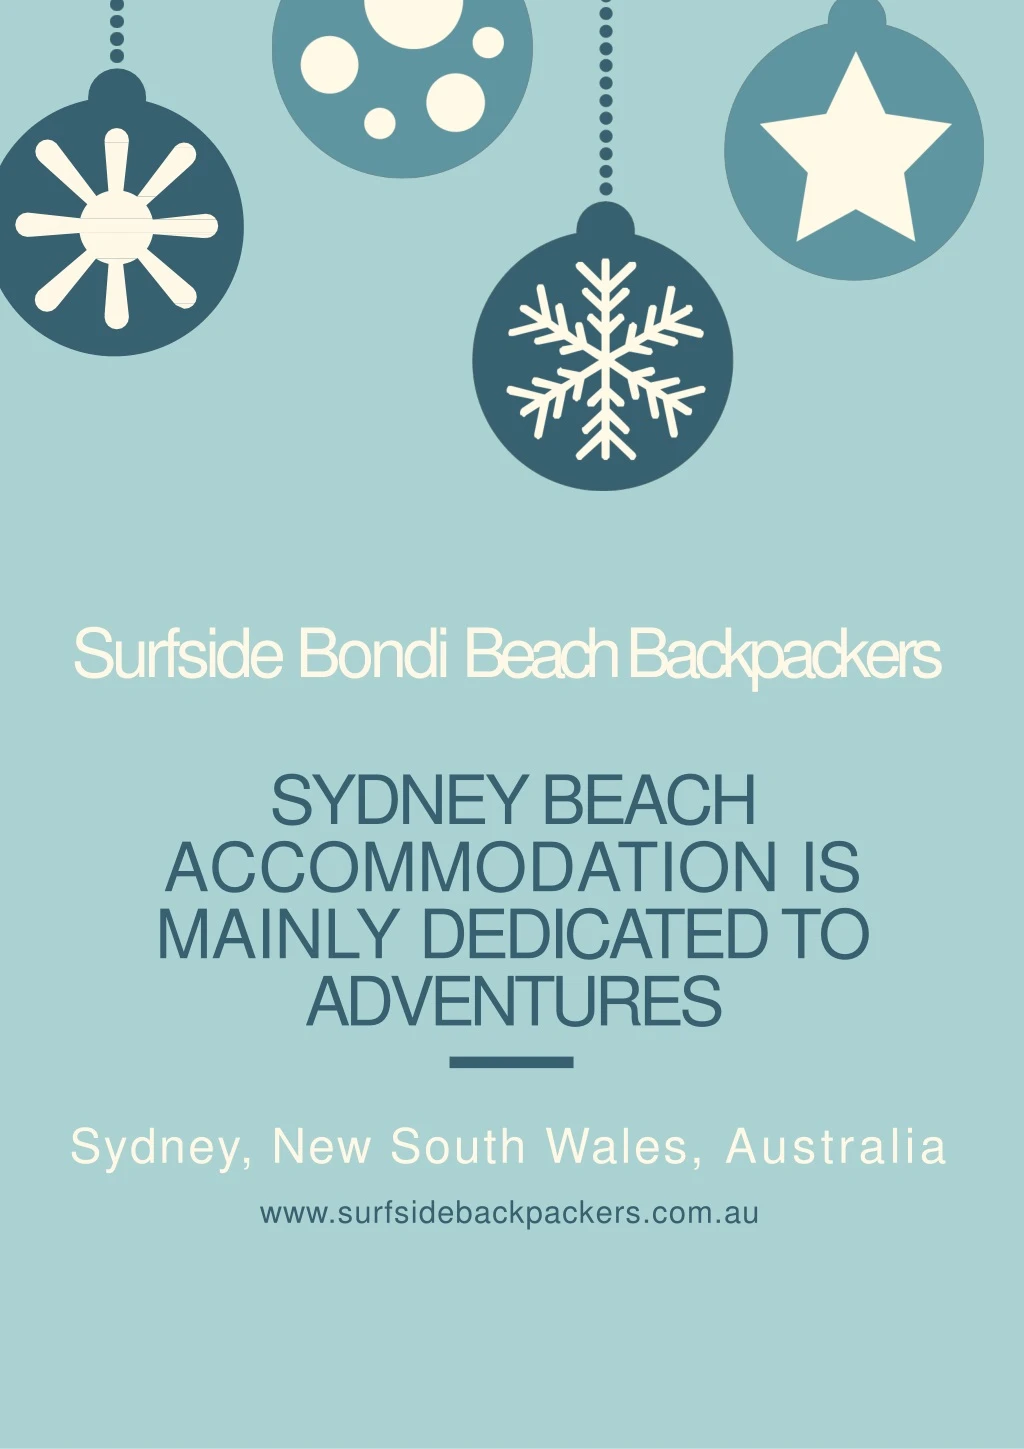 surfside bondi beach backpackers